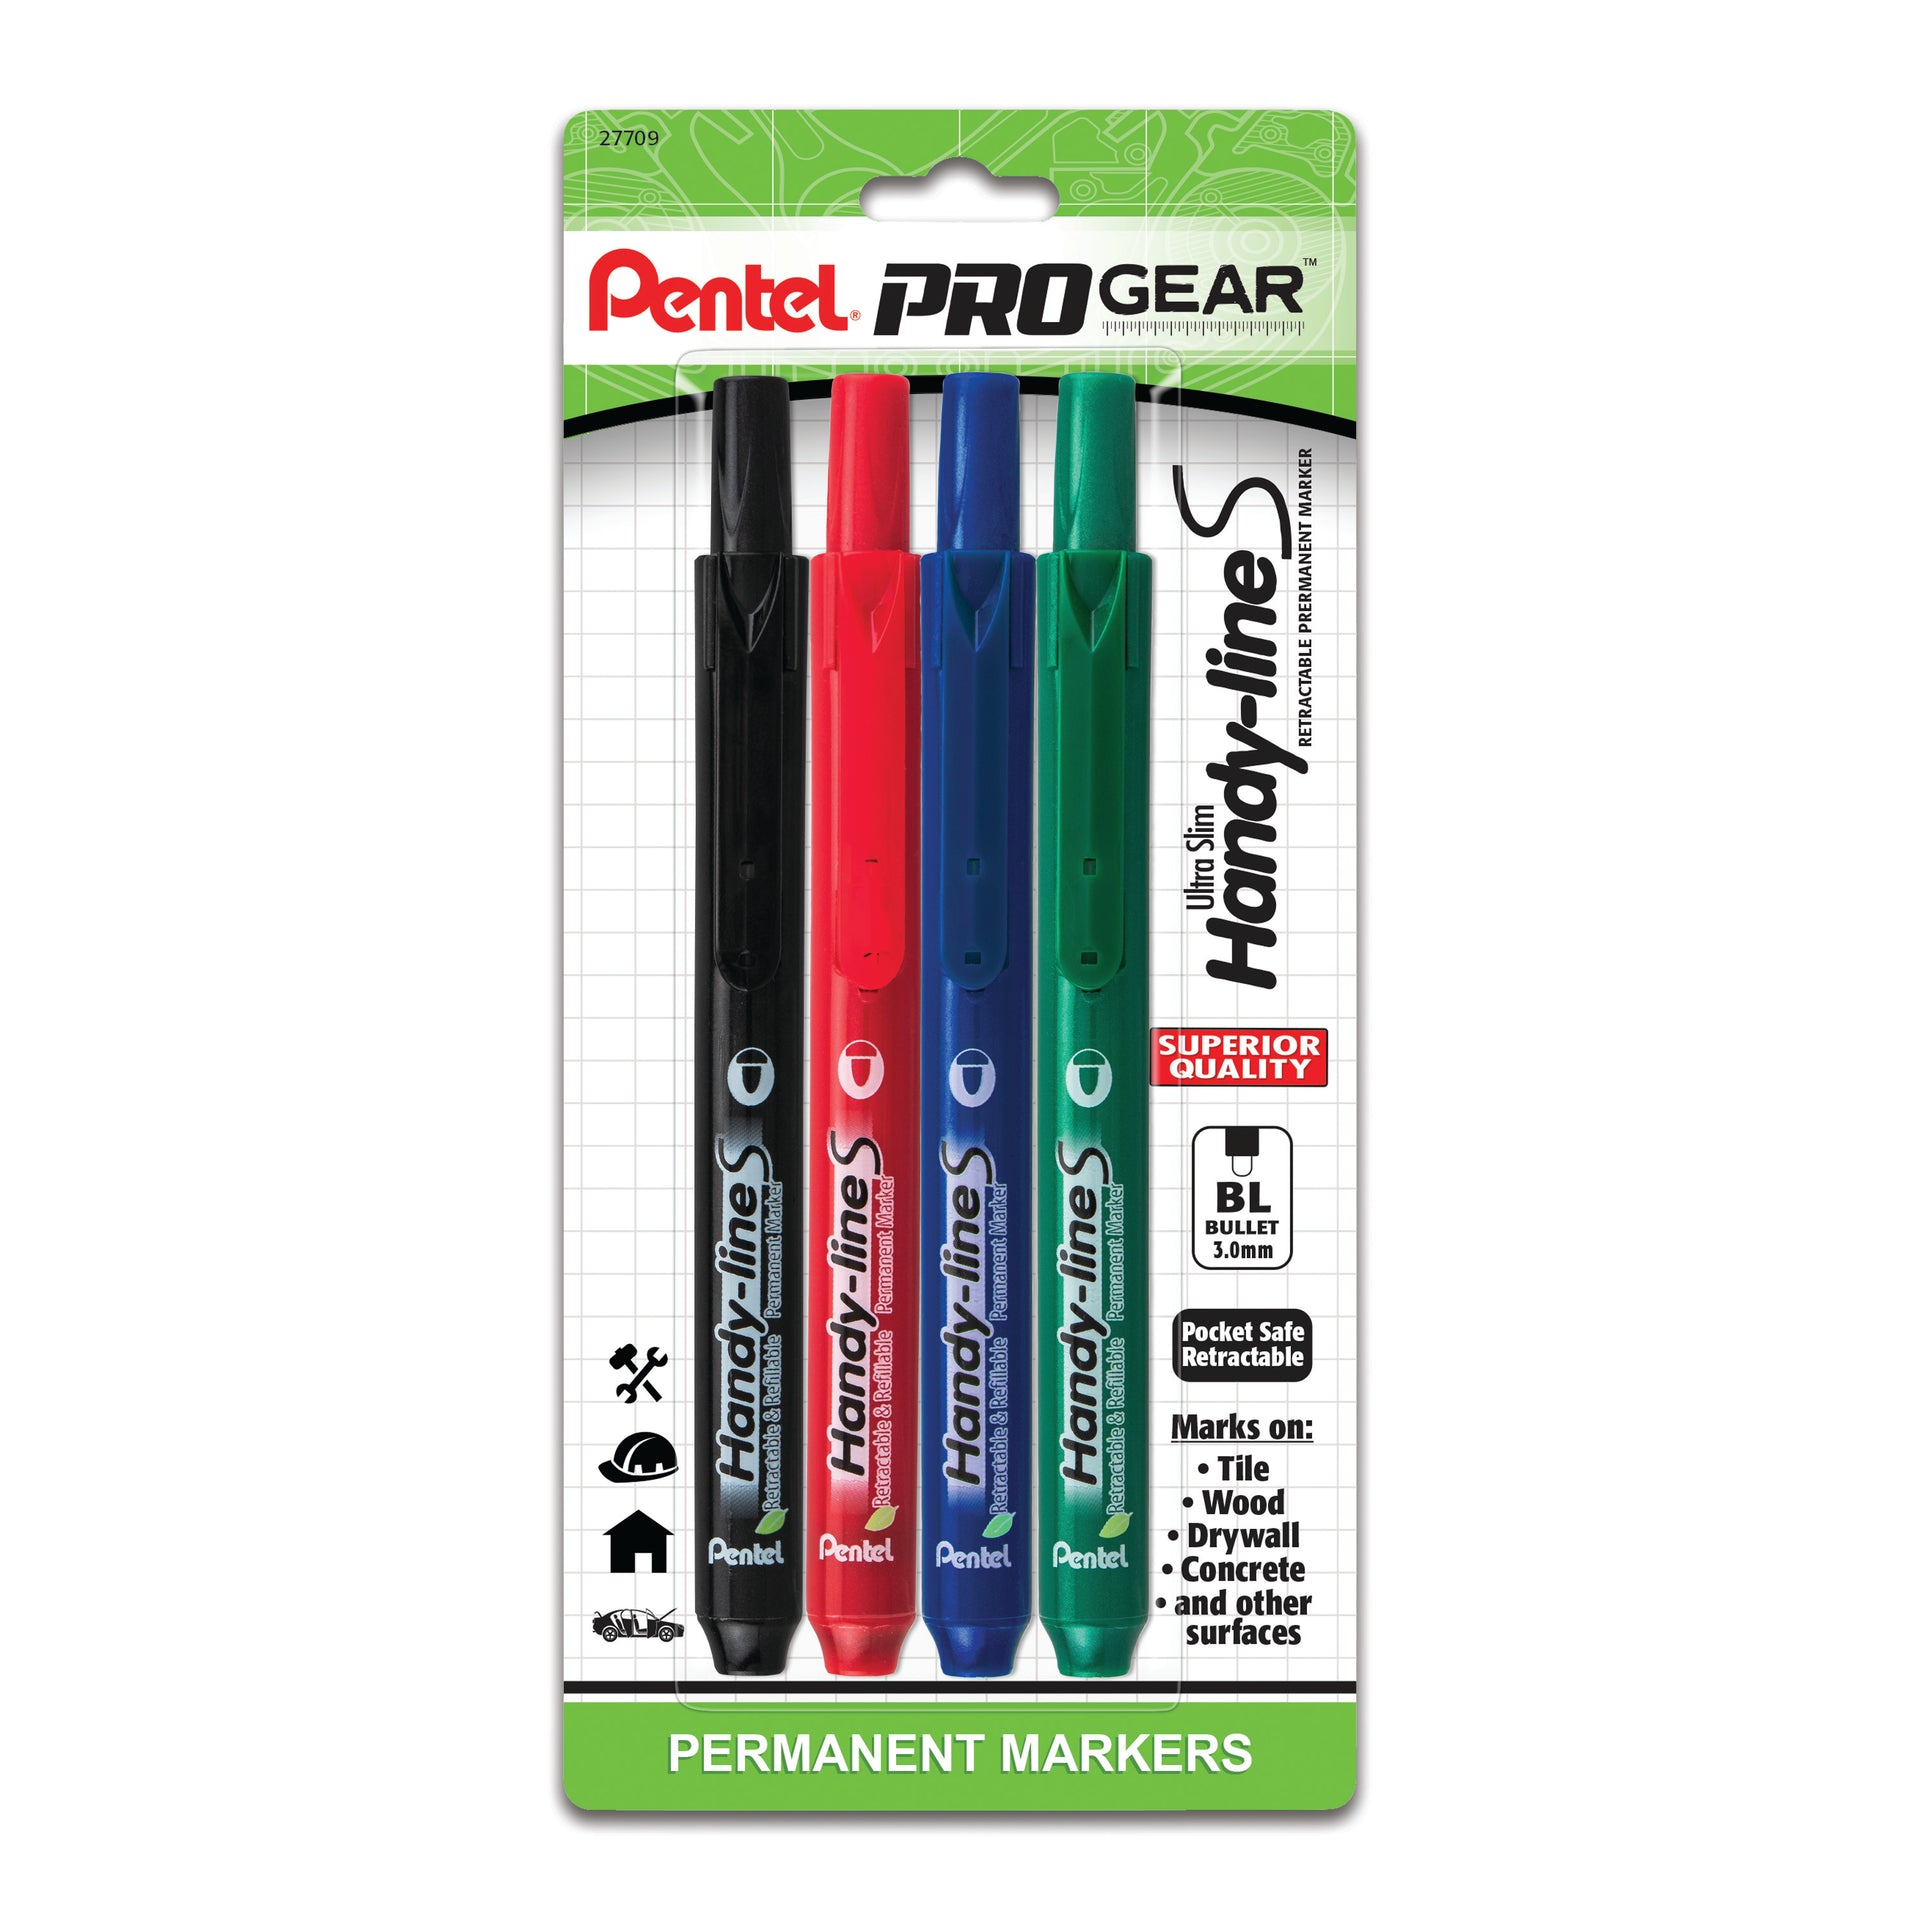 Pentel ProGear Paint Marker, Yellow Ink, 2-pks – Pentel of America, Ltd.